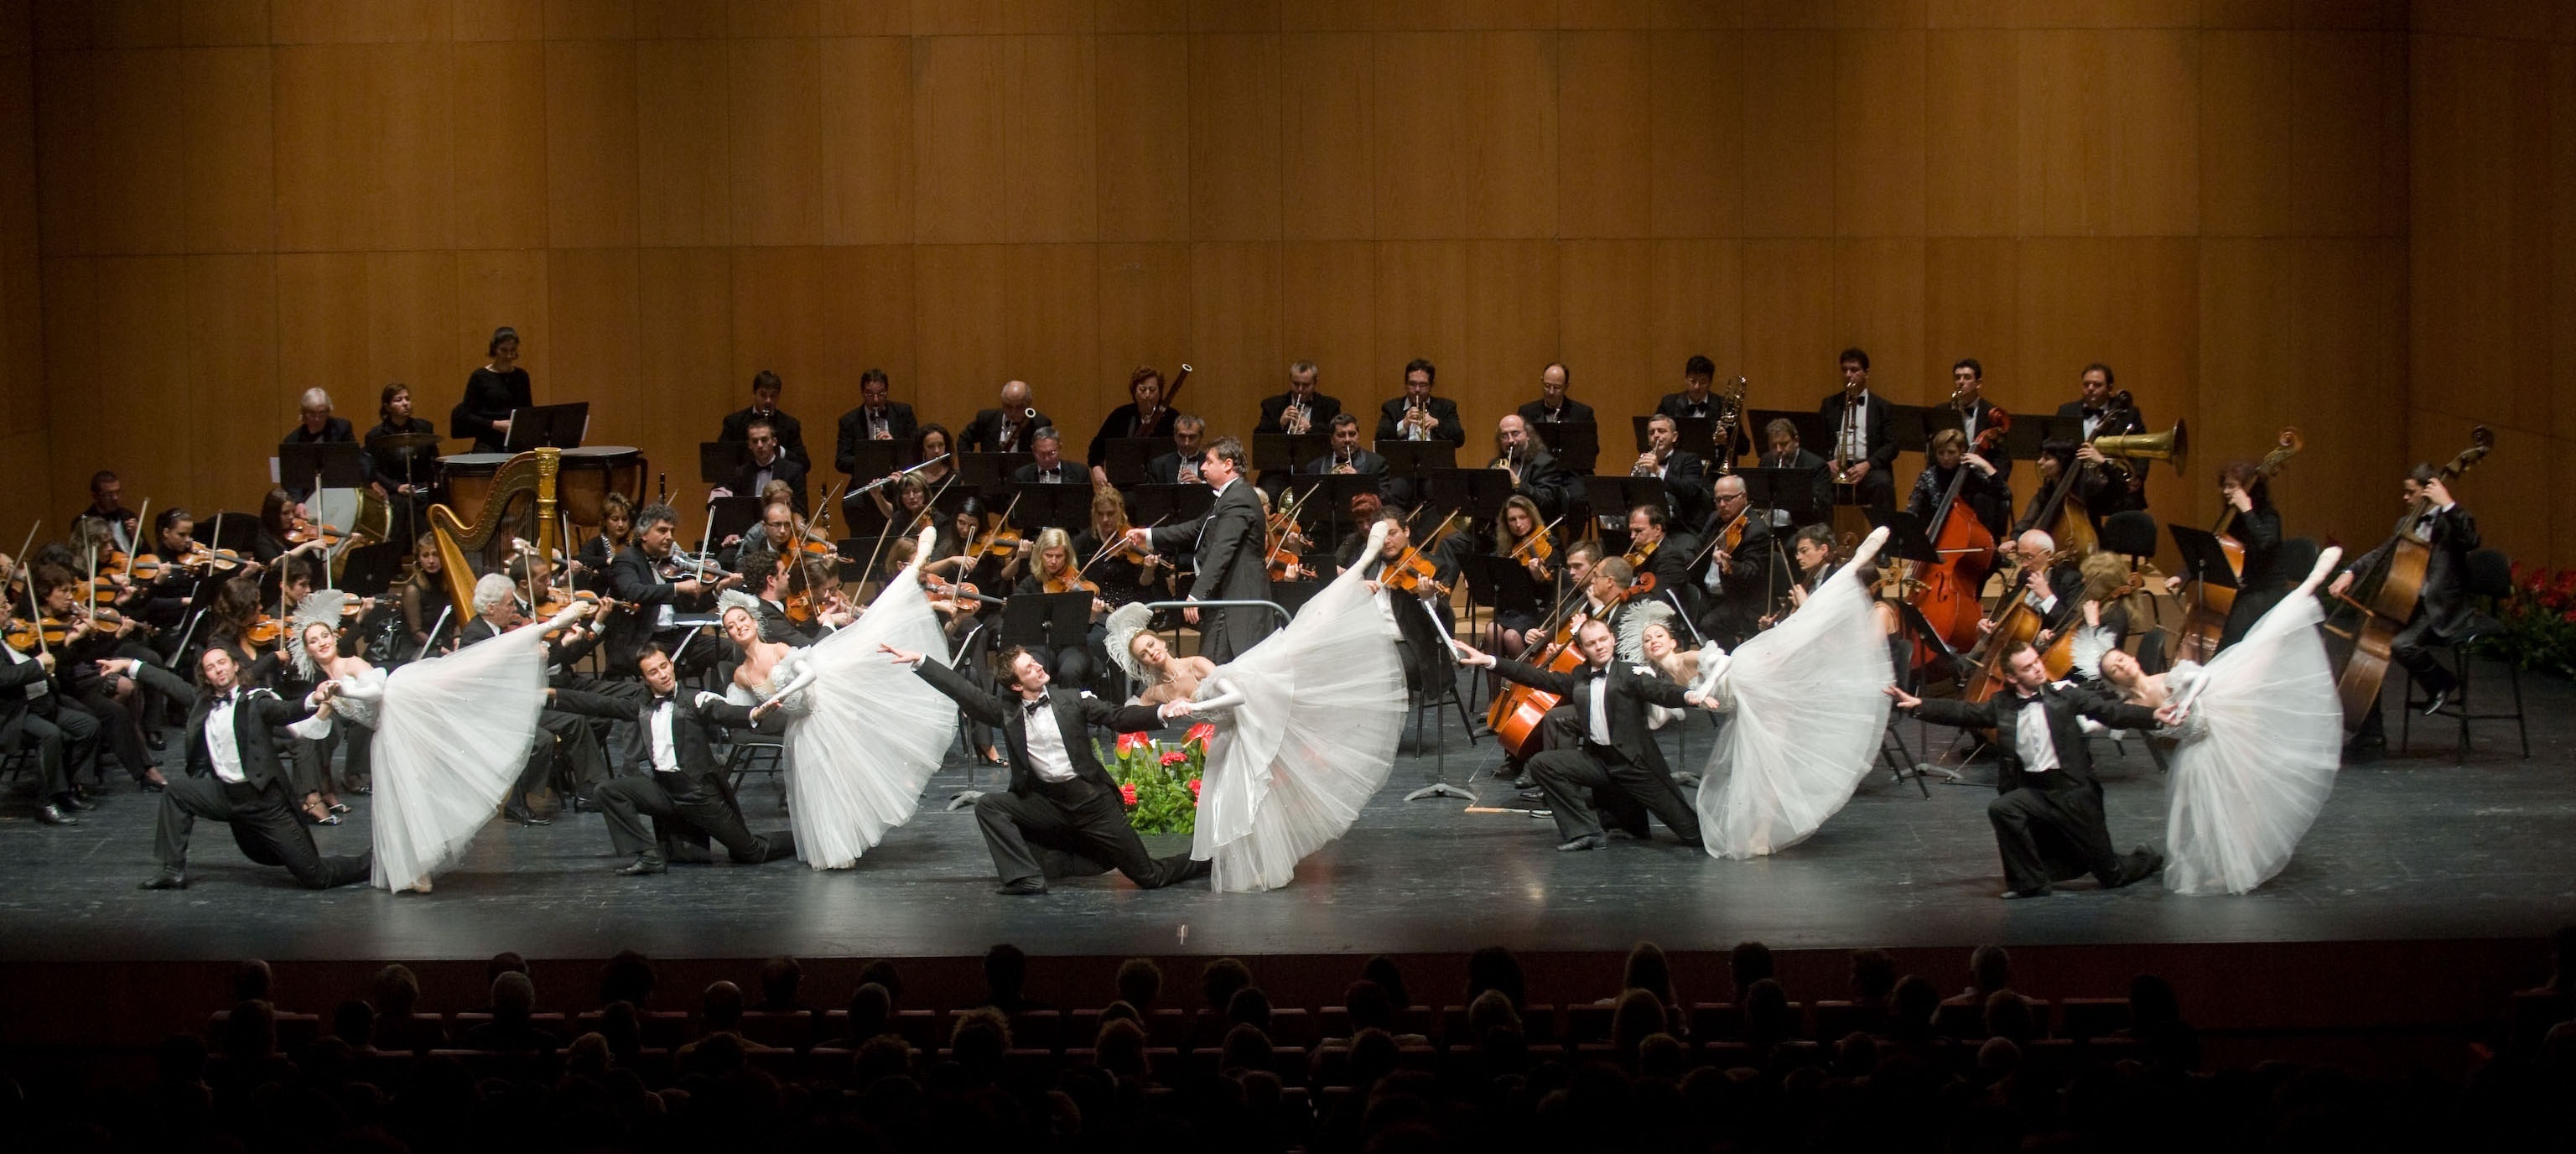 El Gran Concierto de Año Nuevo lleva a Baluarte el 6 de enero una selección de obras de la familia Strauss